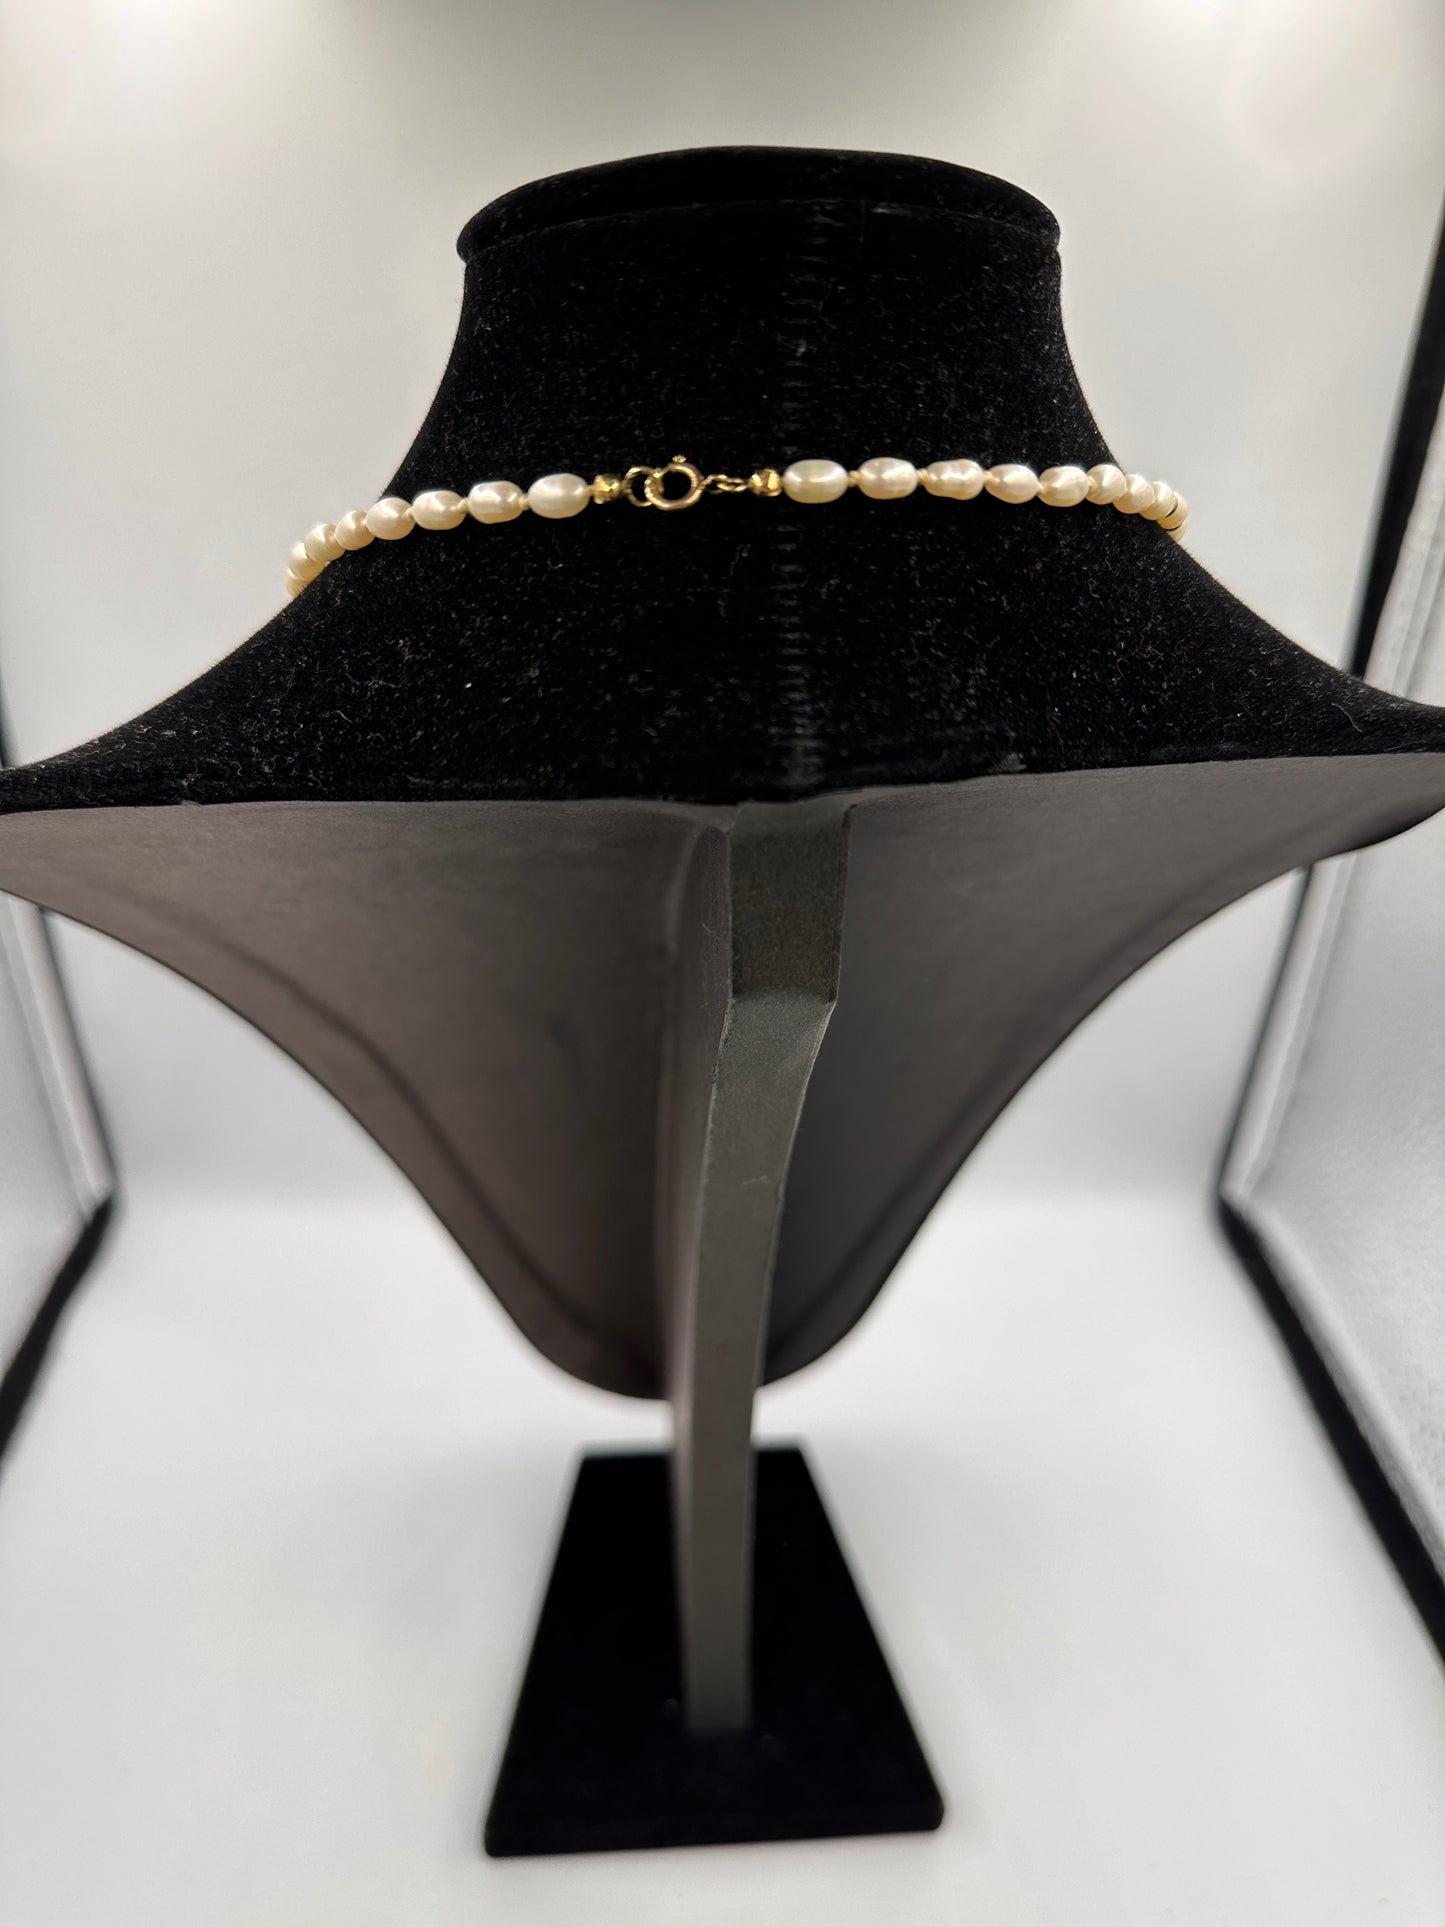 Reis-Perlenkette mit goldenen Akzenten und goldfarbenem Verschluss